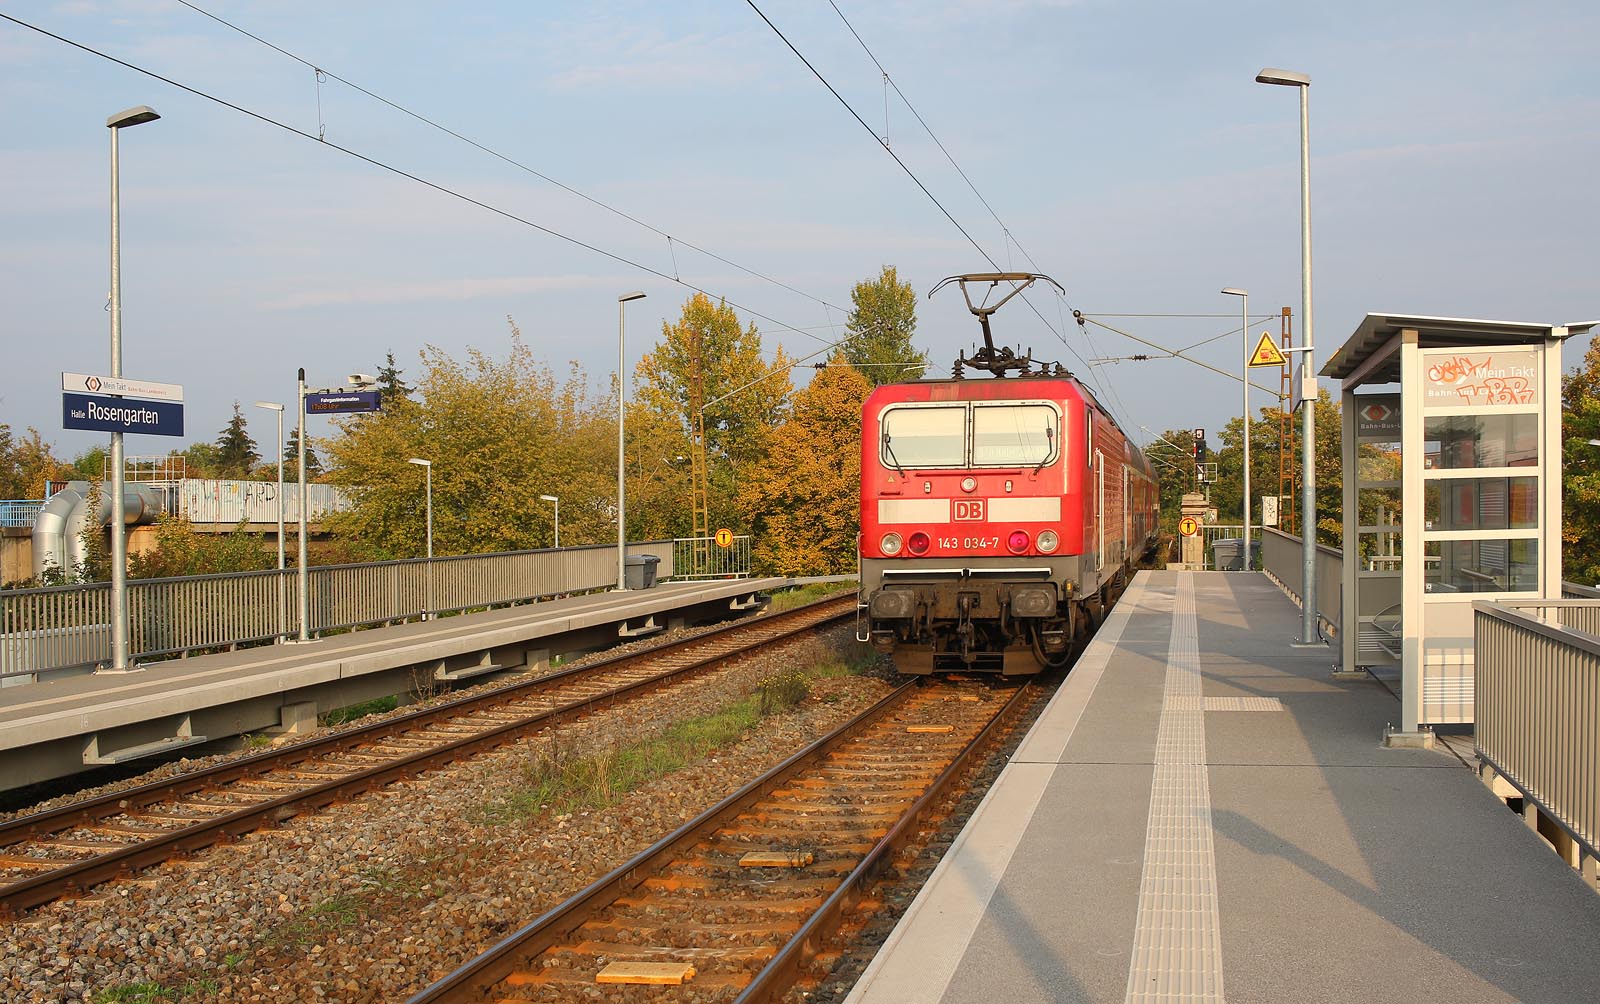 Zastávka leží na hustě provozovaném úseku trati, který sdílí nákladní, osobní dálková i příměstská doprava v režimu S Bahn. Na snímku je vidět vjezdové návěstidlo do stanice Halle (Saale) Hbf.